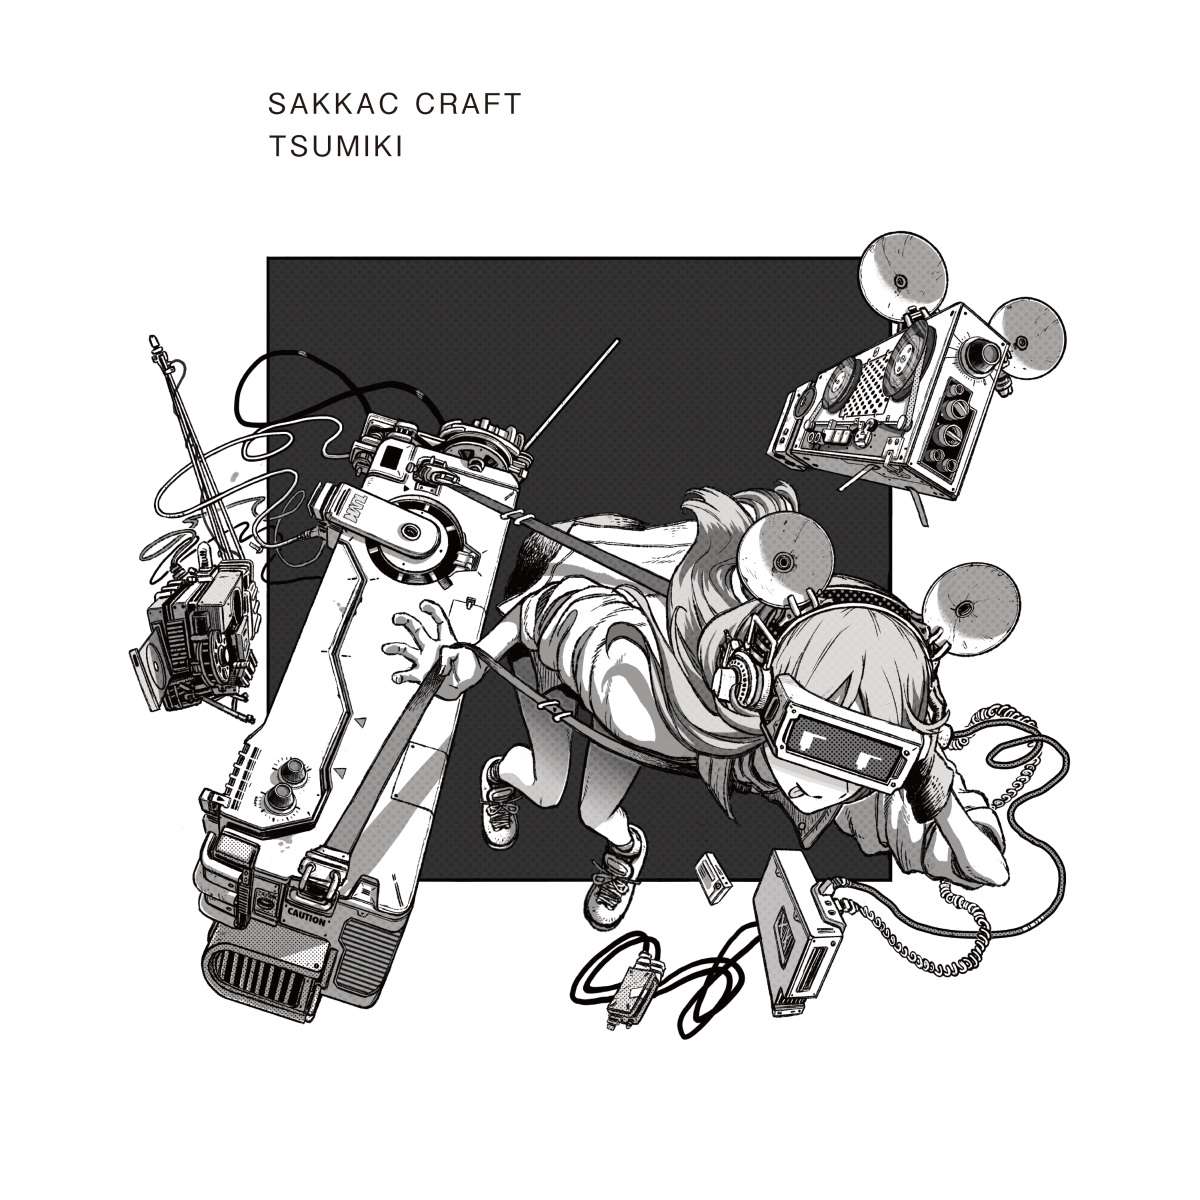 sakkac craft's album cover